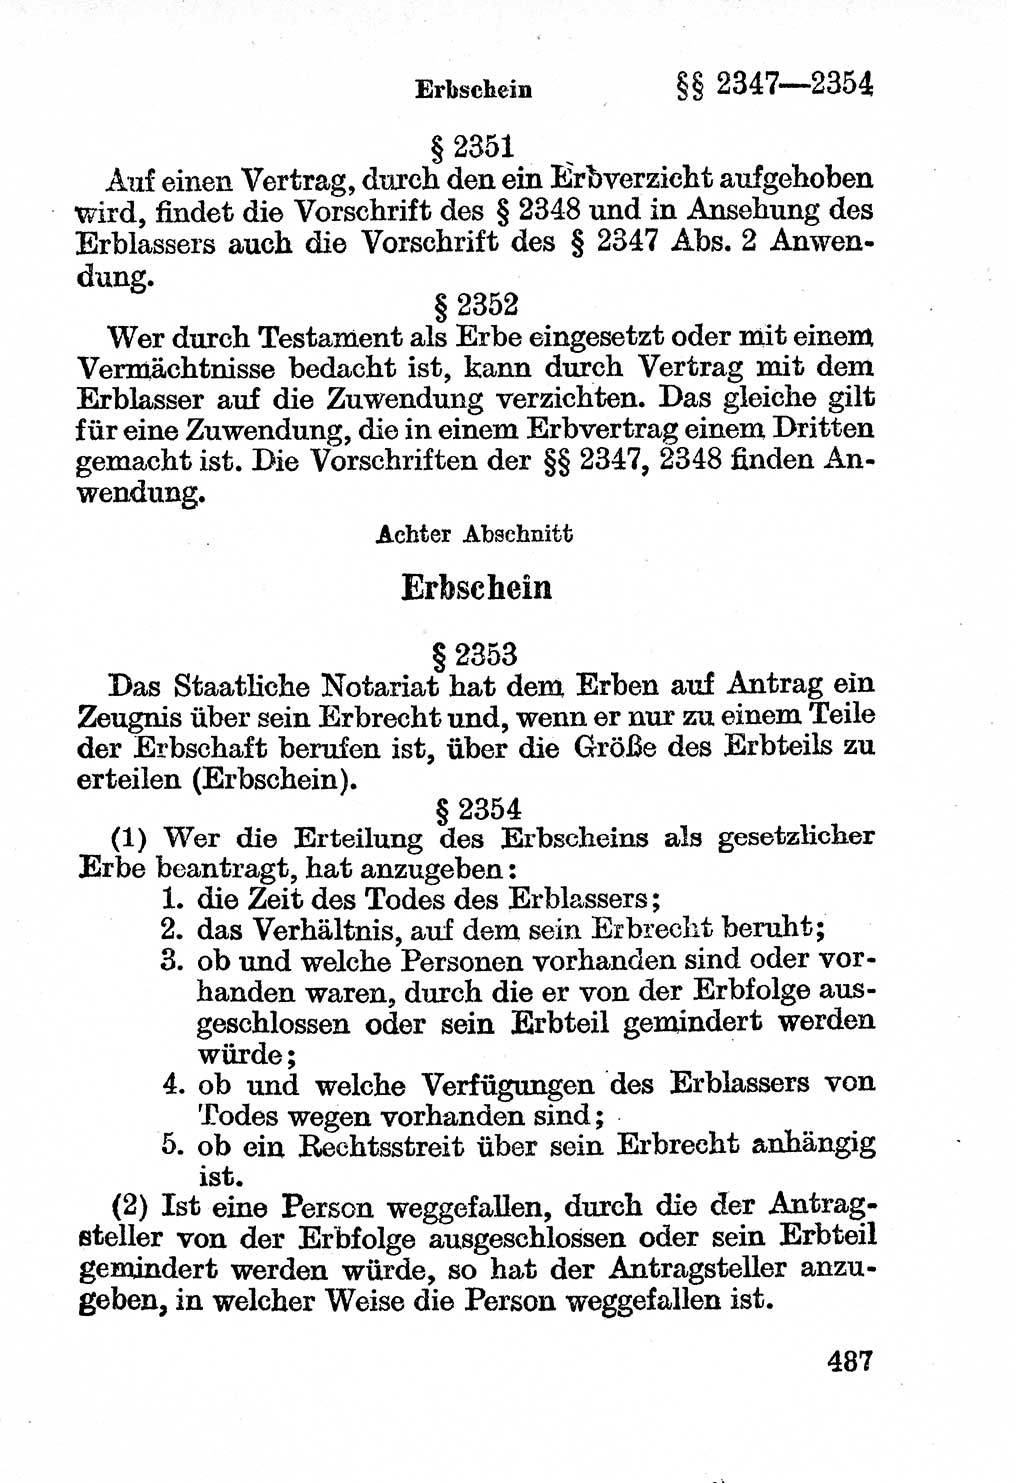 Bürgerliches Gesetzbuch (BGB) nebst wichtigen Nebengesetzen [Deutsche Demokratische Republik (DDR)] 1956, Seite 487 (BGB Nebenges. DDR 1956, S. 487)